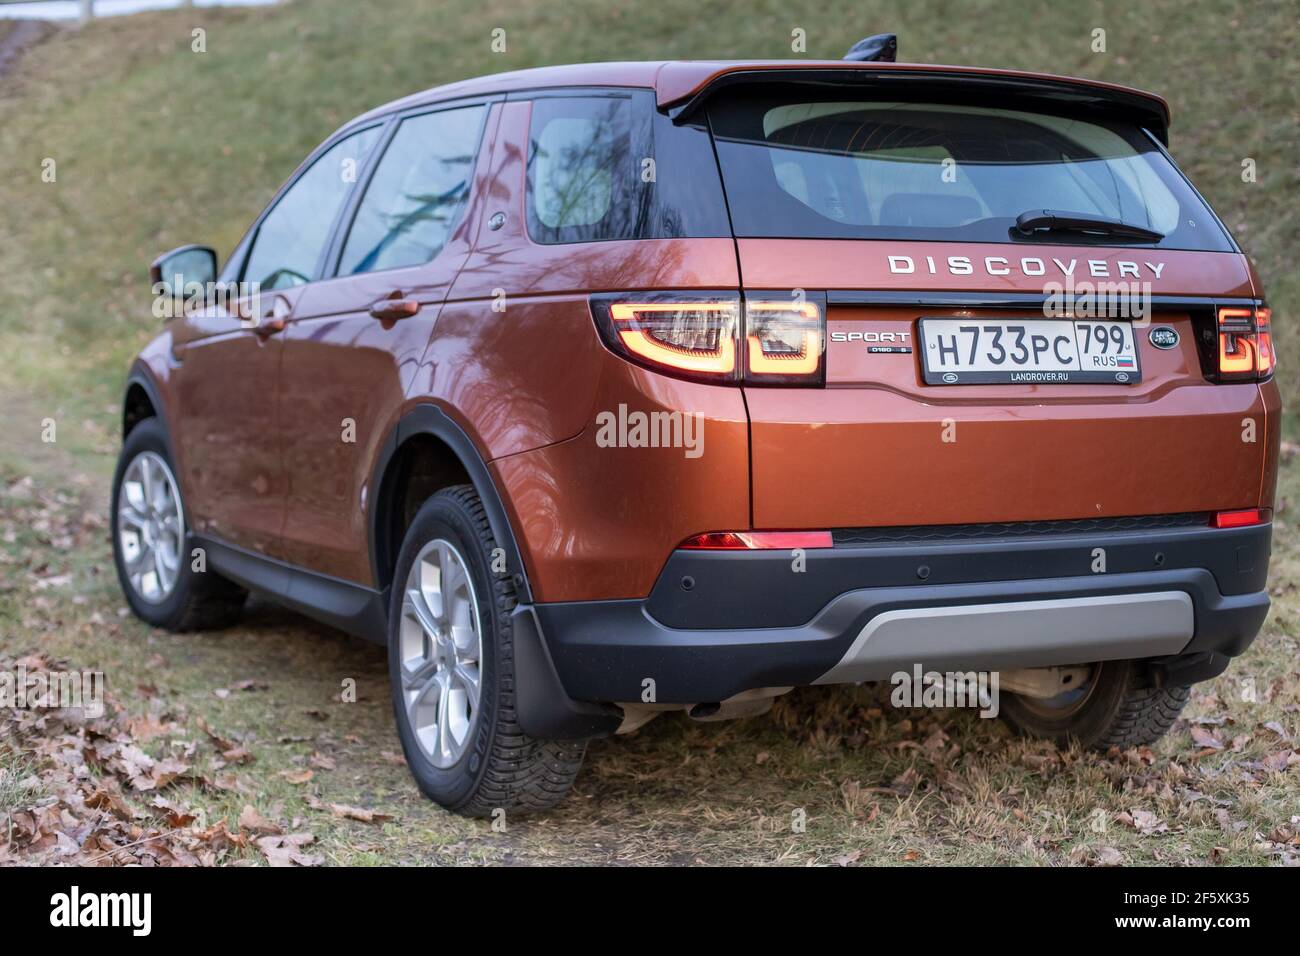 Moskau, Russland - 20. Dezember 2019: Rückansicht des neuen Premium england suv. Land Rover Discovery Sport im Wald geparkt. Orange Allradantrieb Auto steht auf dem Boden. Stockfoto